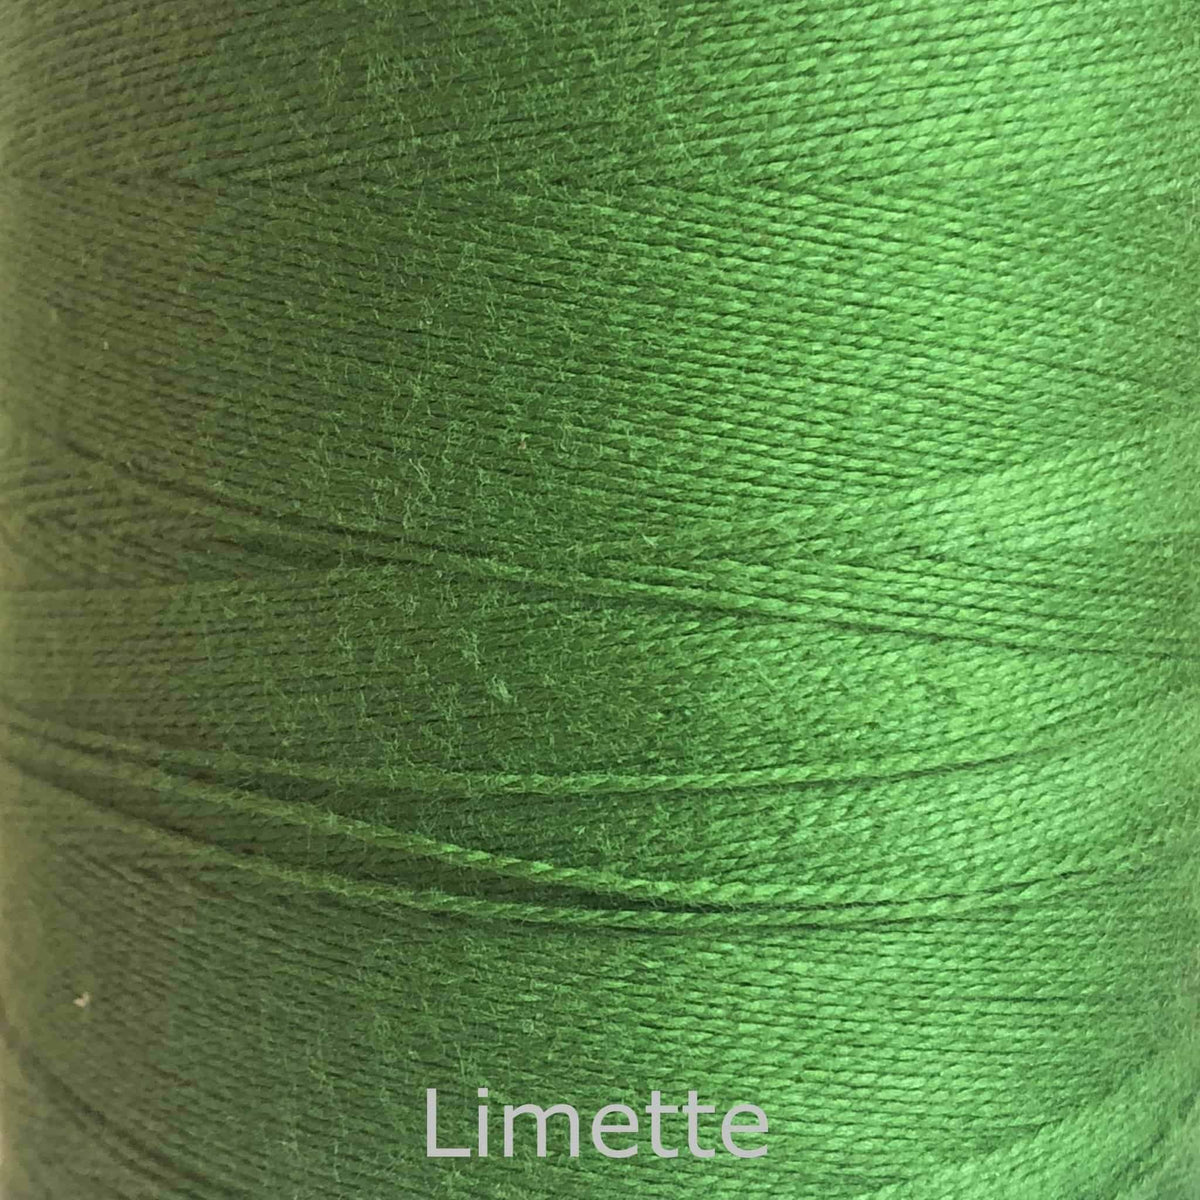 16/2 cotton weaving yarn limette